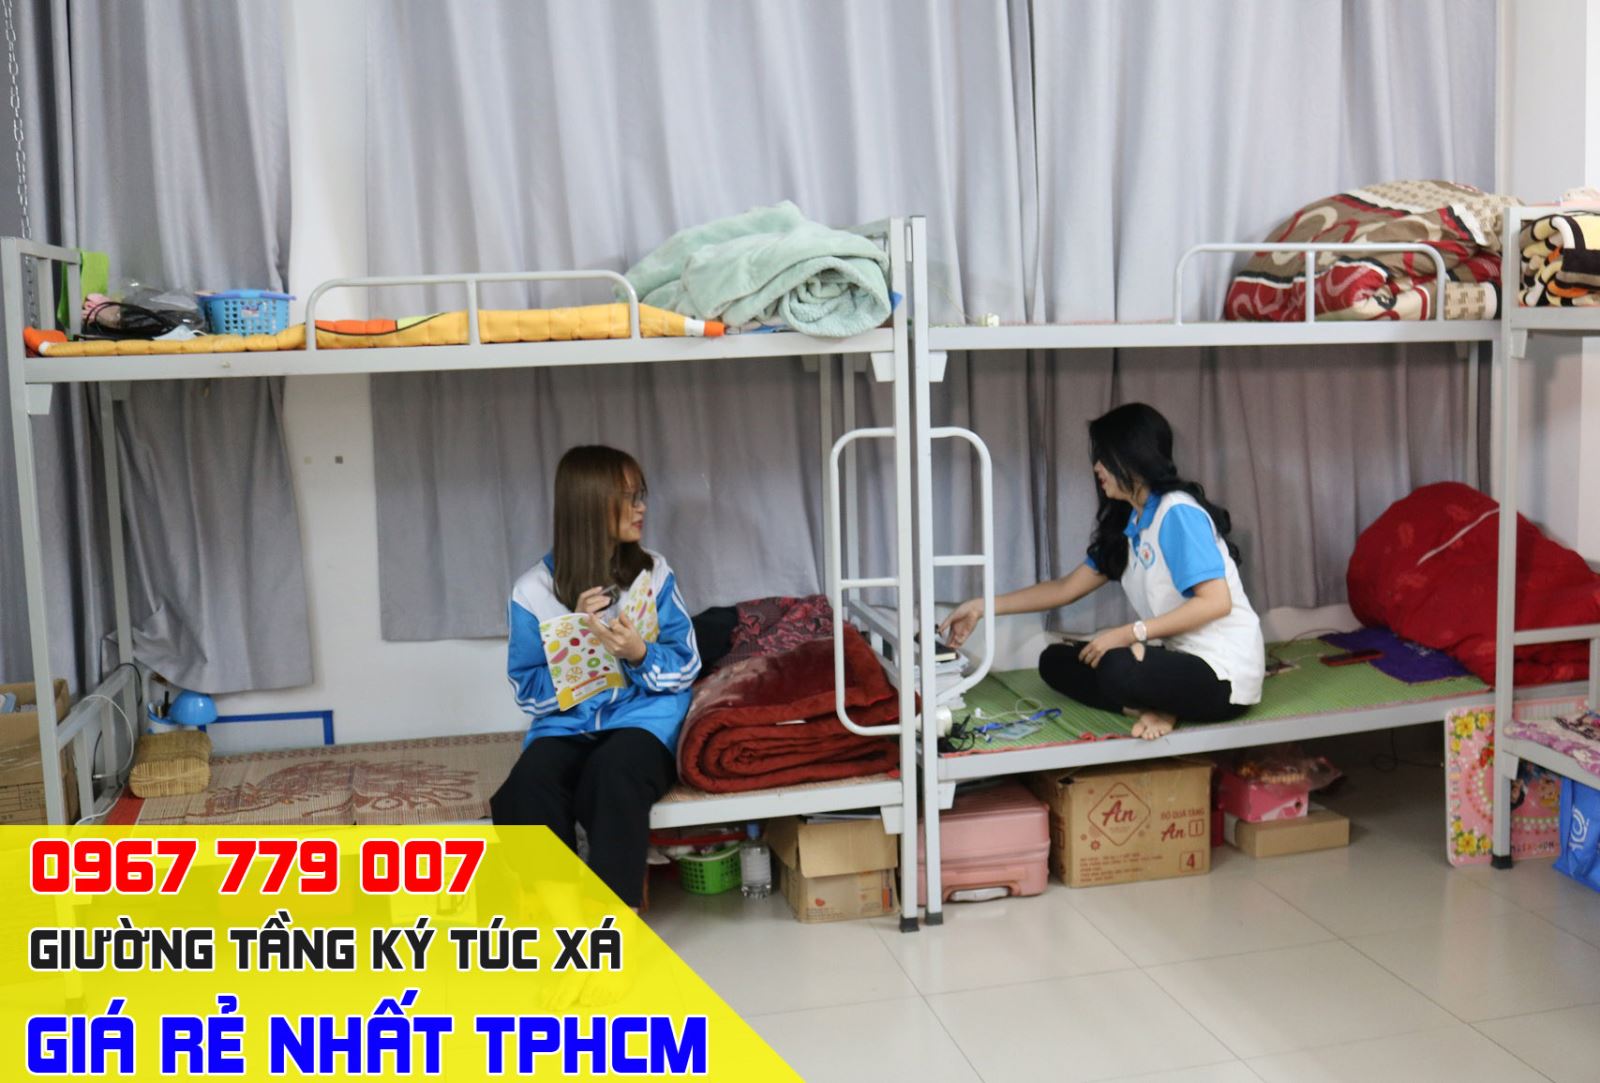 thi công nội thất giường tầng ký túc xá sinh viên giá rẻ tại tphcm